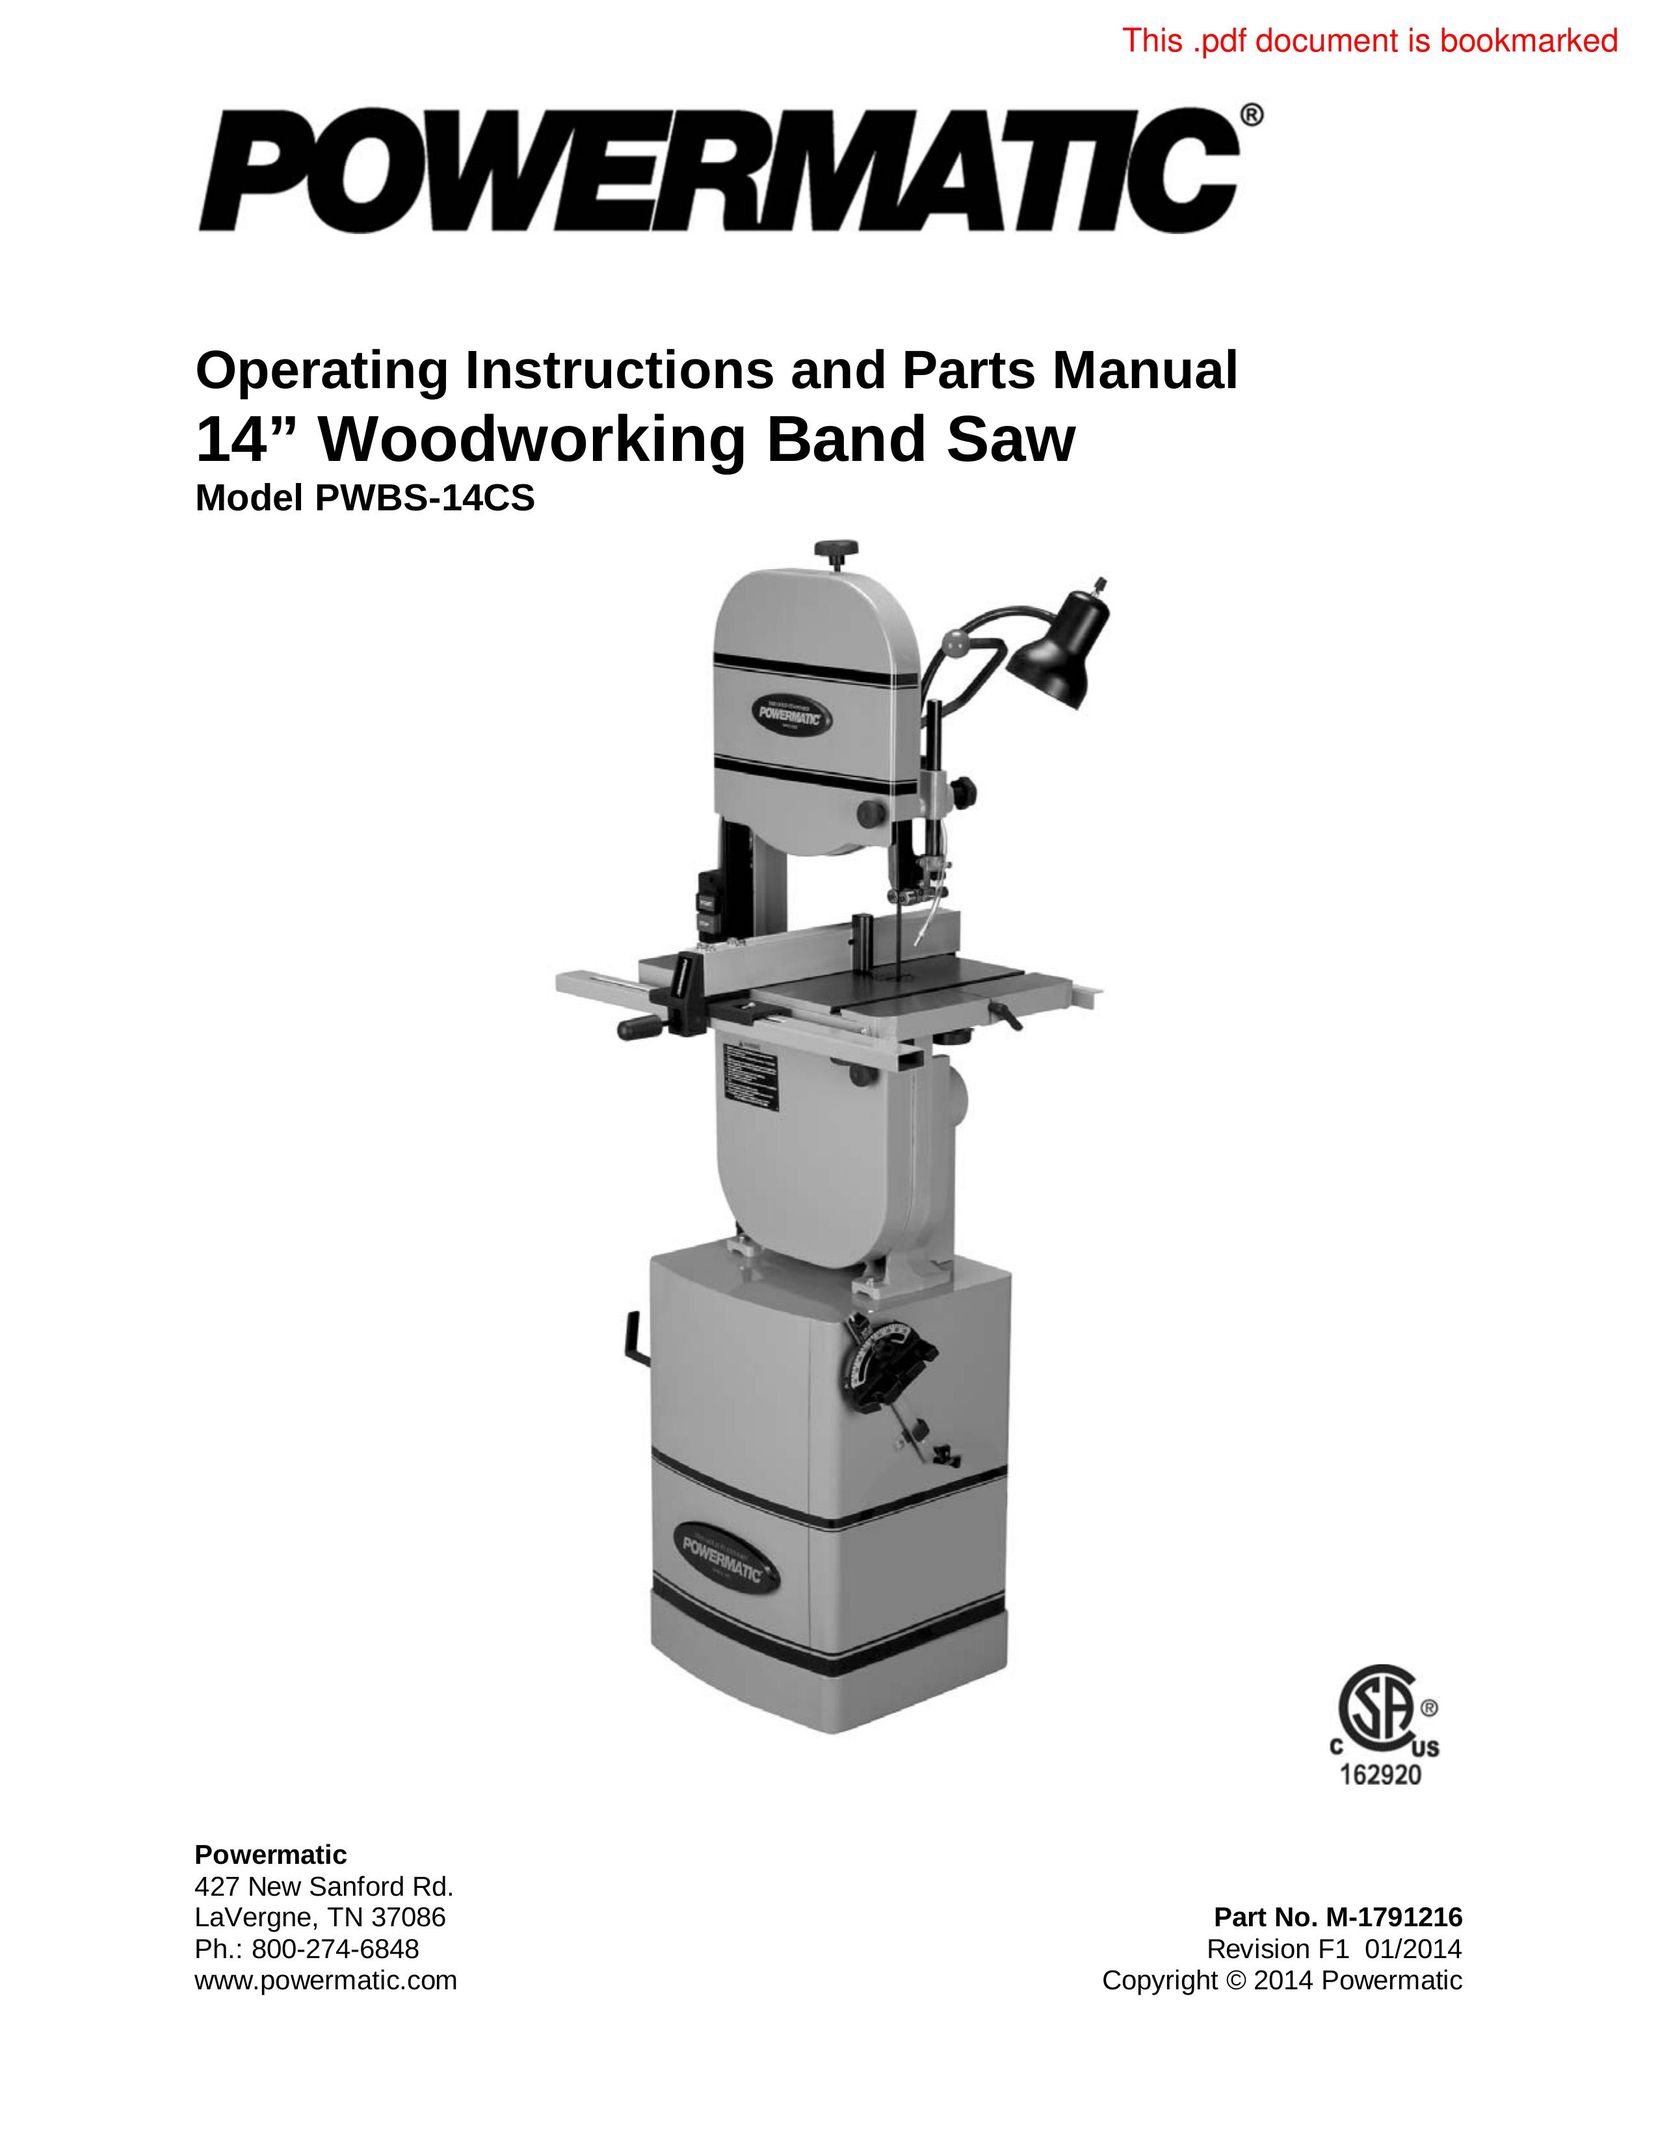 Powermatic PWBS-14CS Cordless Saw User Manual